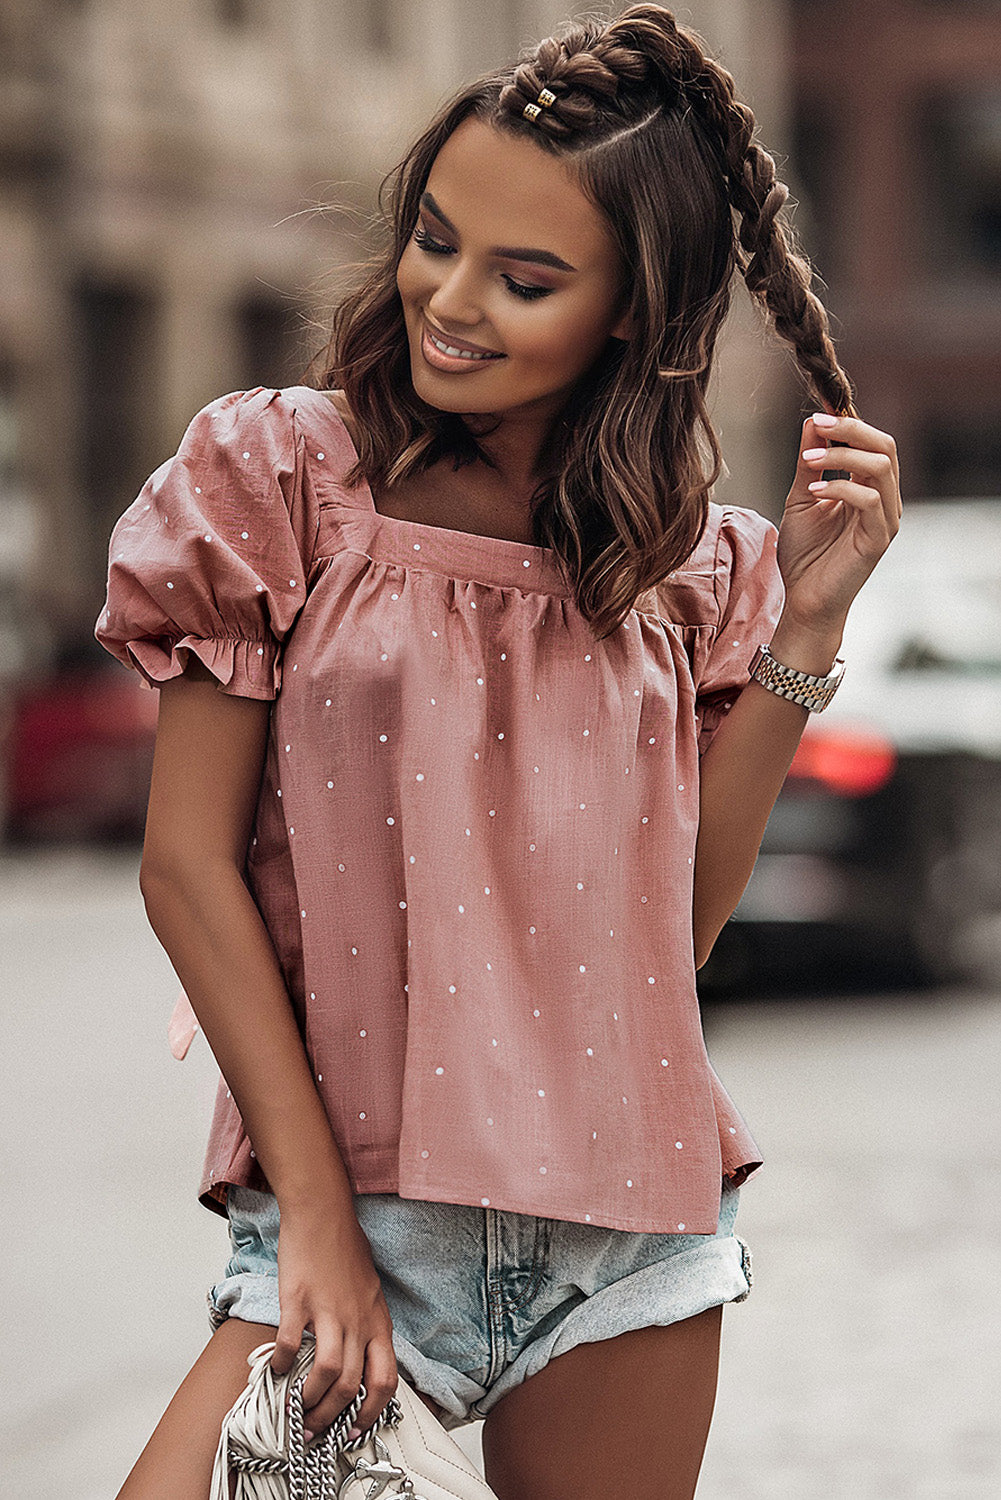 Rožnata bluza z napihnjenimi rokavi s kvadratnim ovratnikom in pikčastim potiskom na hrbtni strani